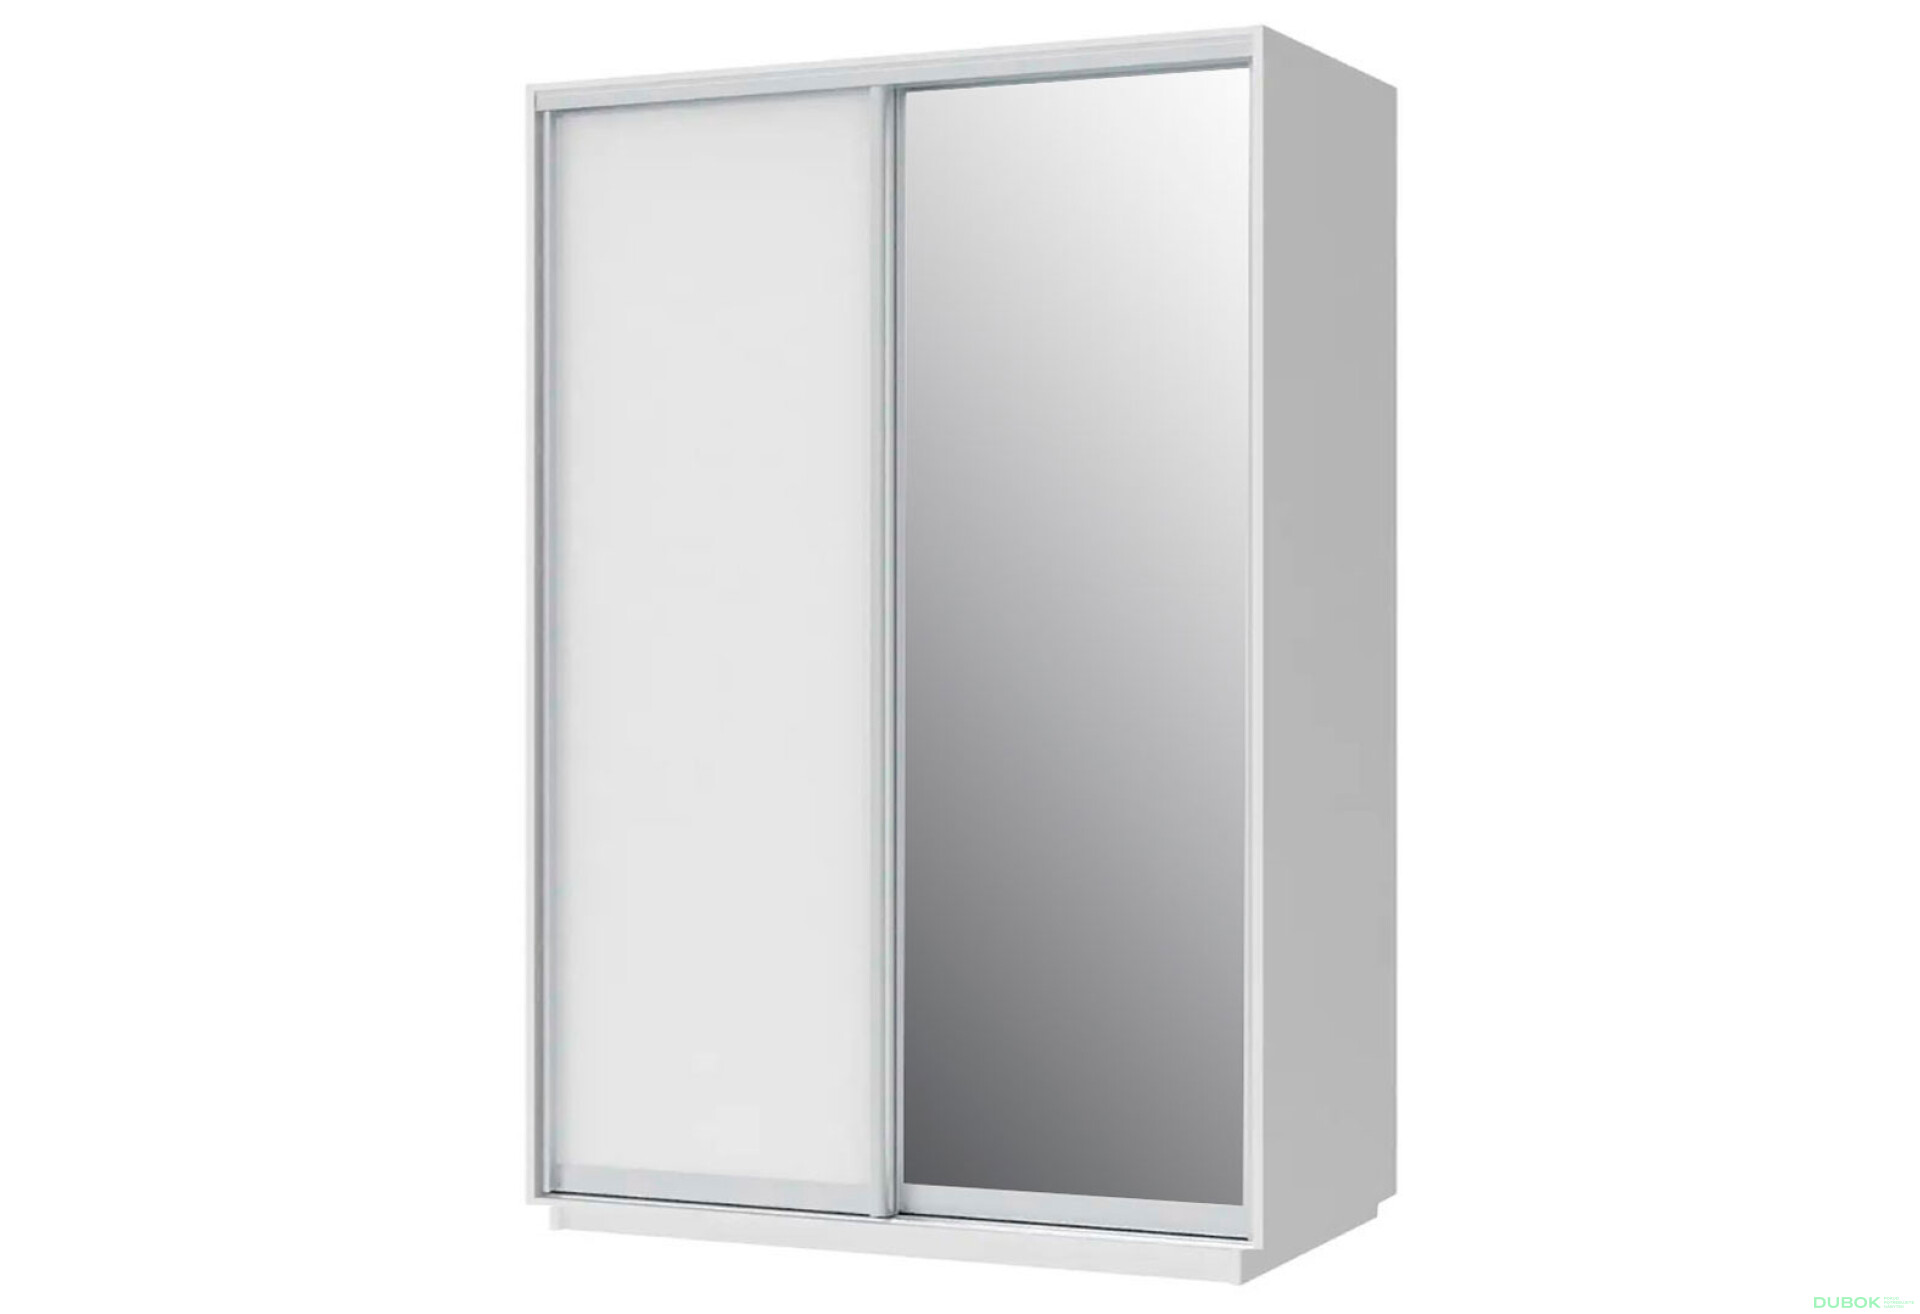 Fotografie 1 - Skříň 180x240x60 nymphaea alba, 1 dřevotříska+1 zrcadlo, stříbrný profil